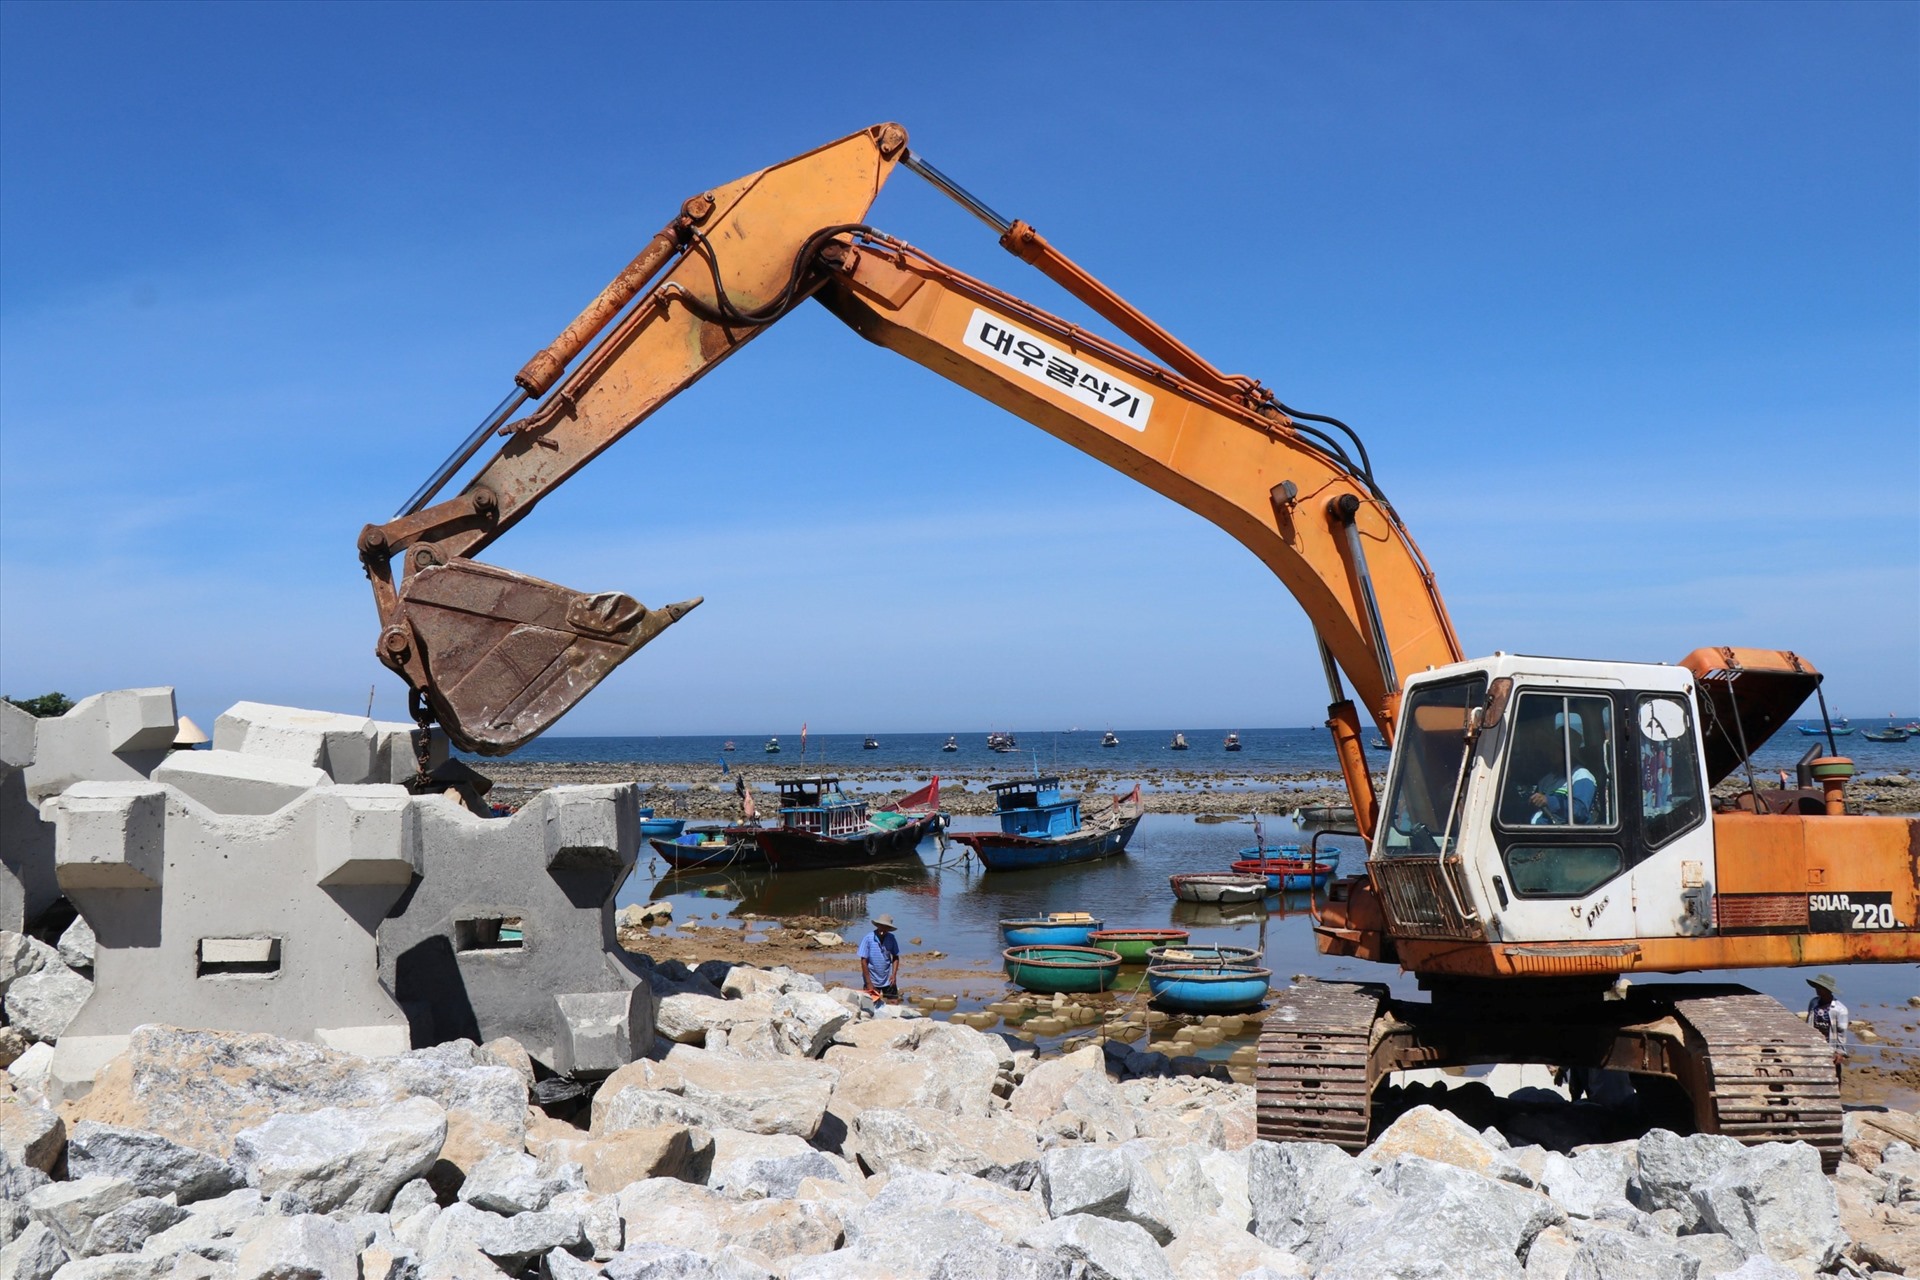 Từ sự hỗ trợ của Trung ương và nguồn ngân sách tỉnh, từ 2021 đến nay, Quảng Ngãi đã đầu tư hàng nghìn tỉ đồng để xây dựng nhiều công trình kè chống sạt lở bờ biển, bờ sông. Ảnh: Ngọc Viên